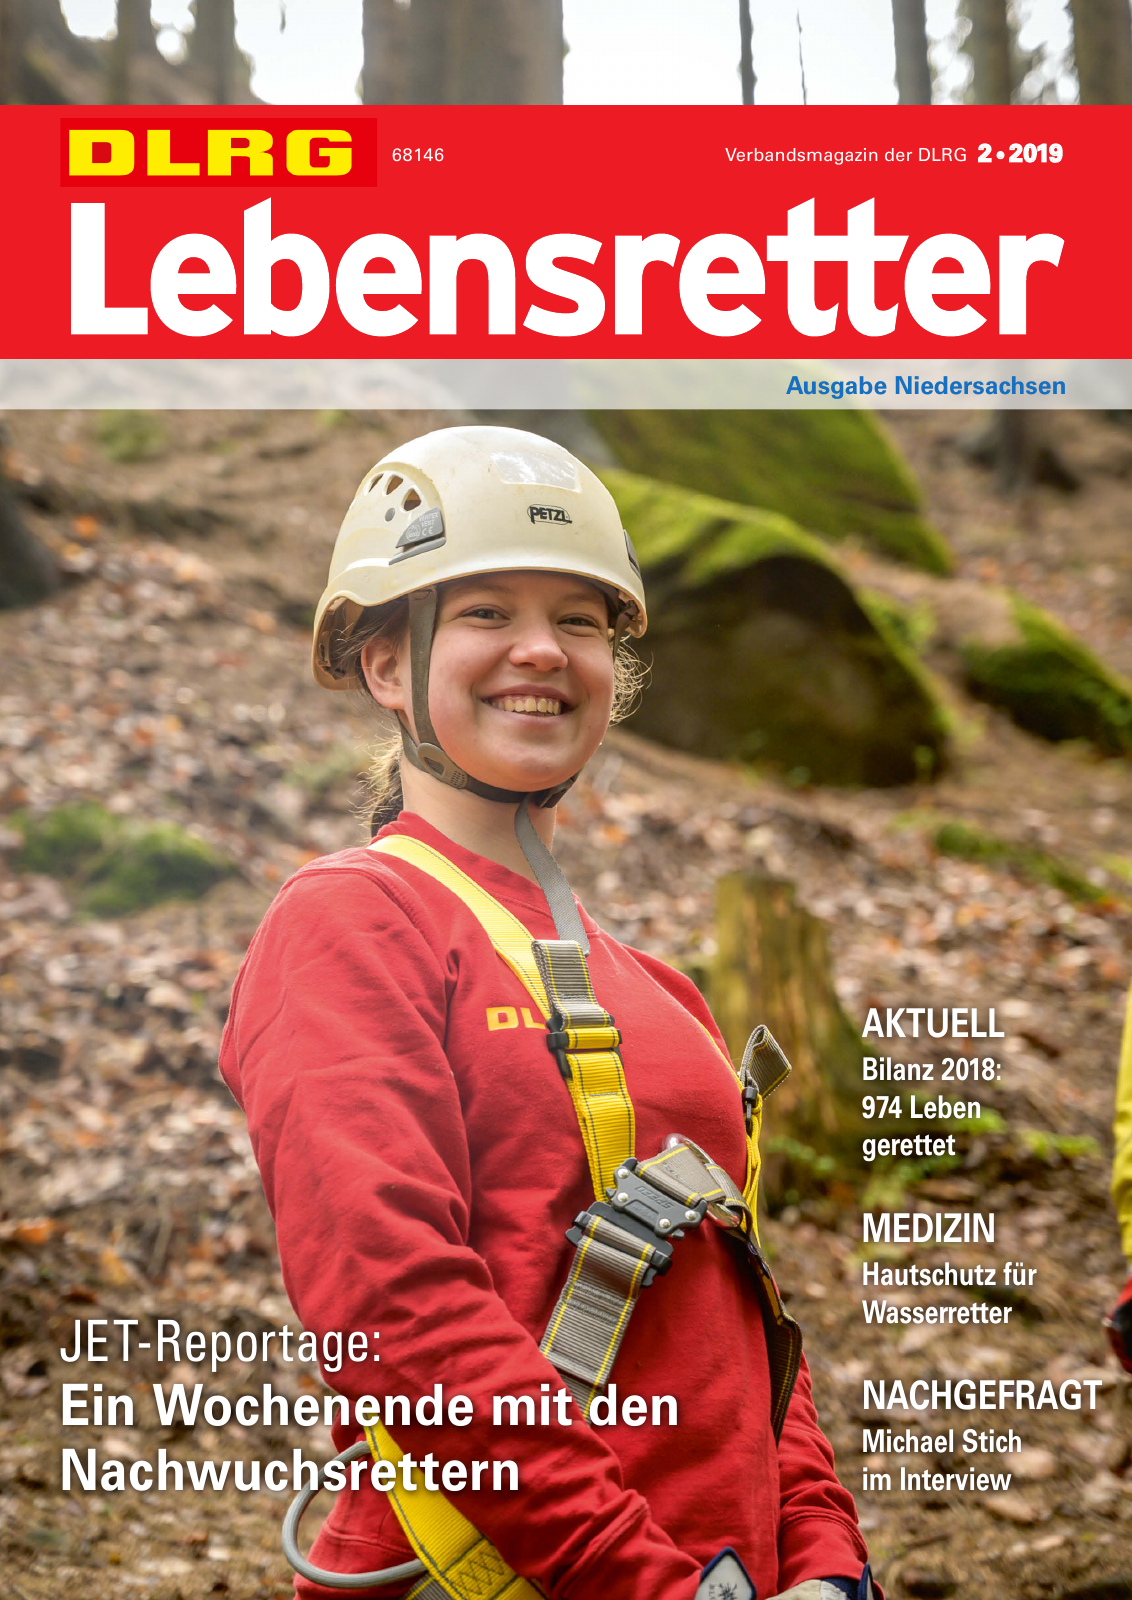 Vorschau Lebensretter 2/2019 - Niedersachsen Regionalausgabe Seite 1